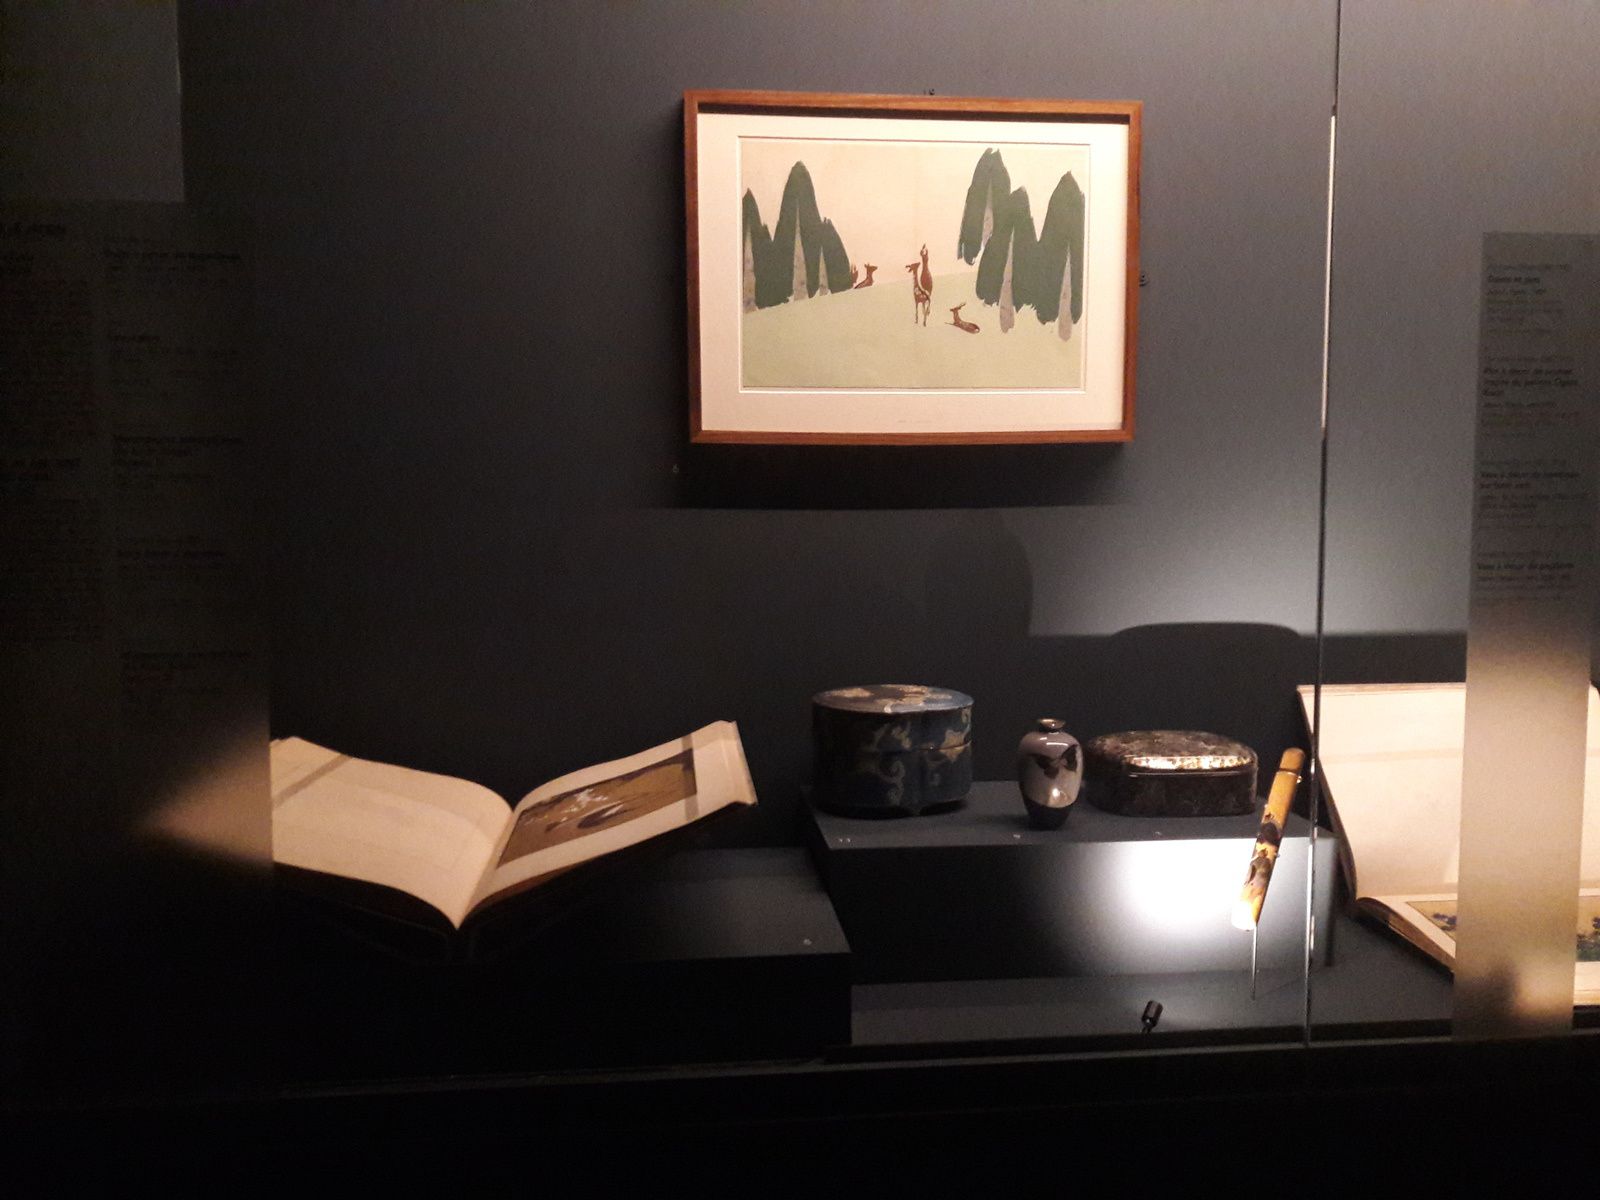 Exposition Meiji un art foisonnant à découvrir au musée Guimet jusqu'au 14 janvier 